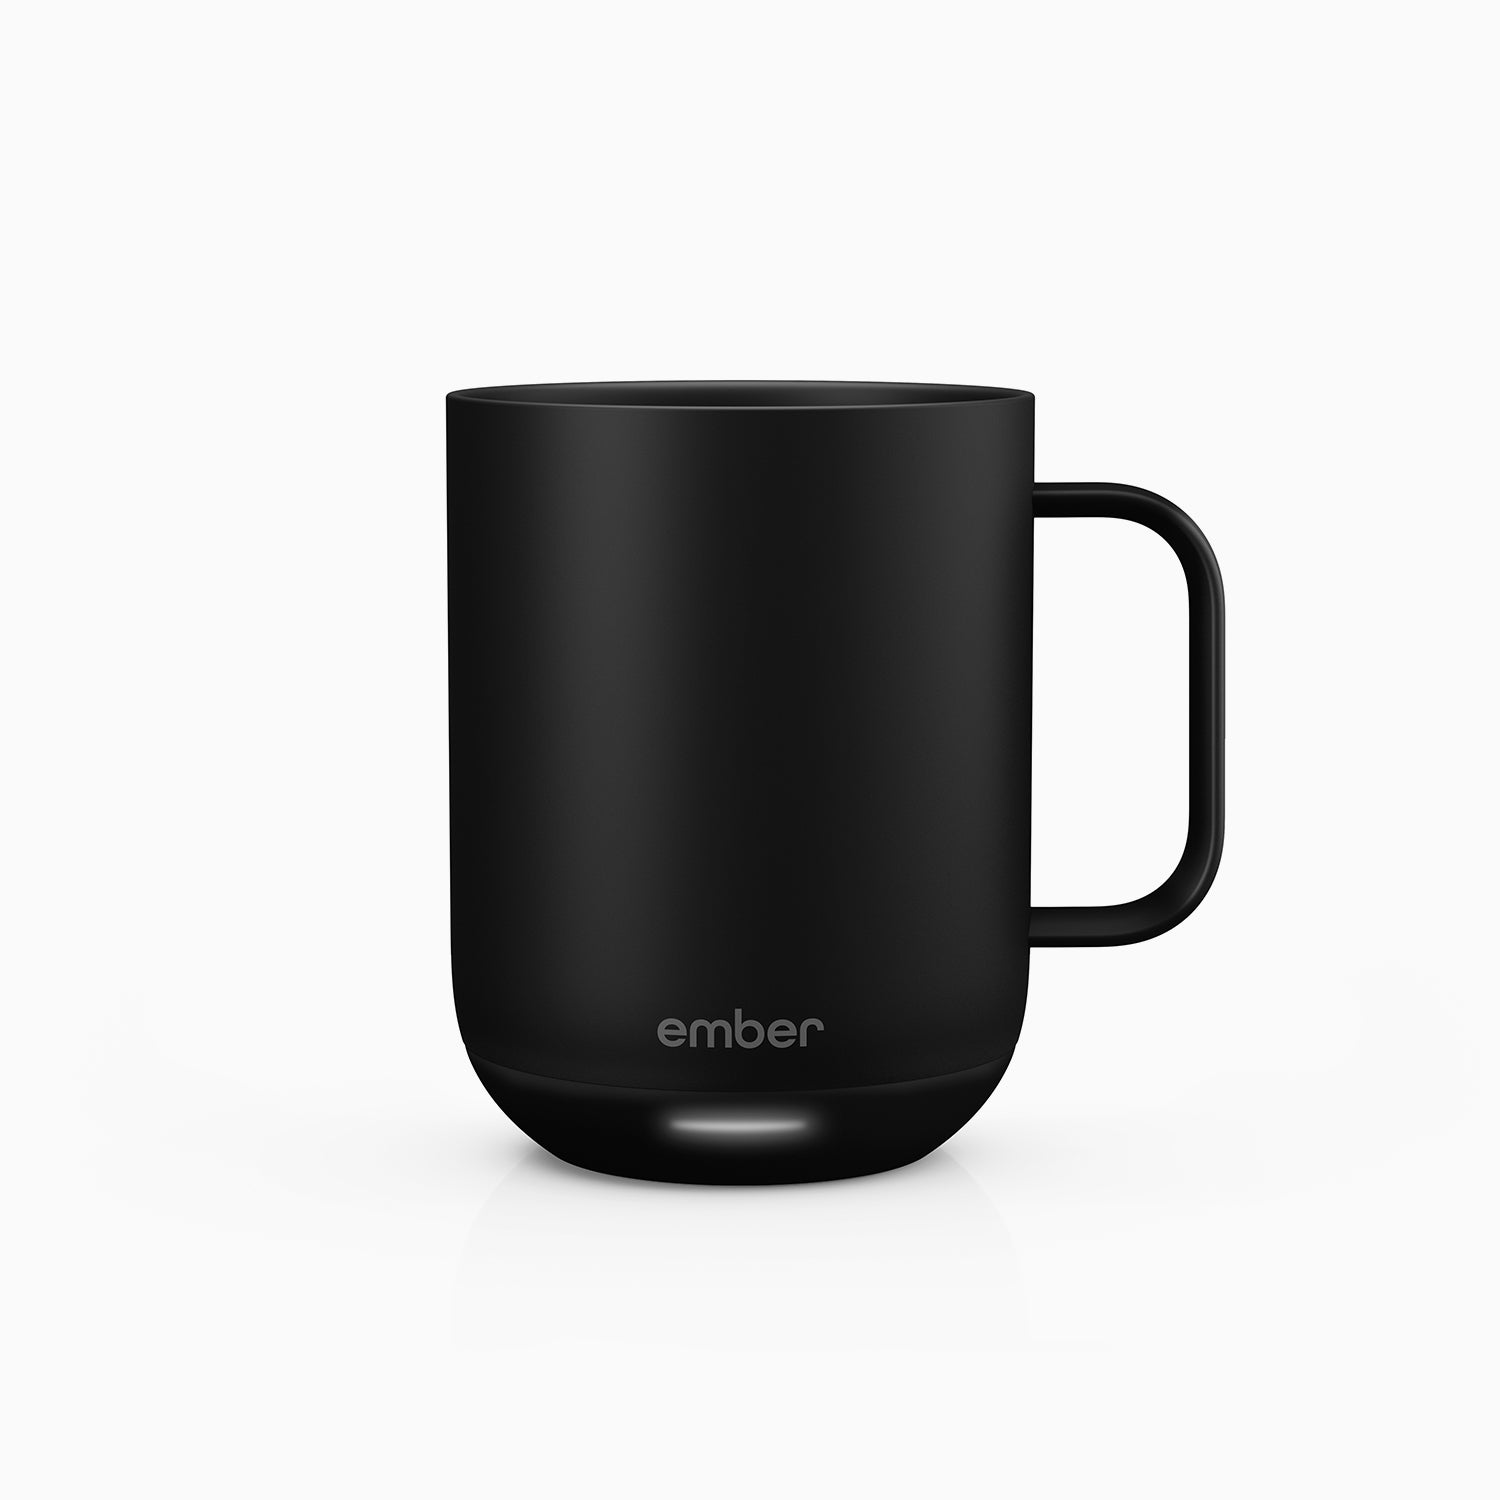 Ember Travel Mug 2, Heated Travel Mug 12oz